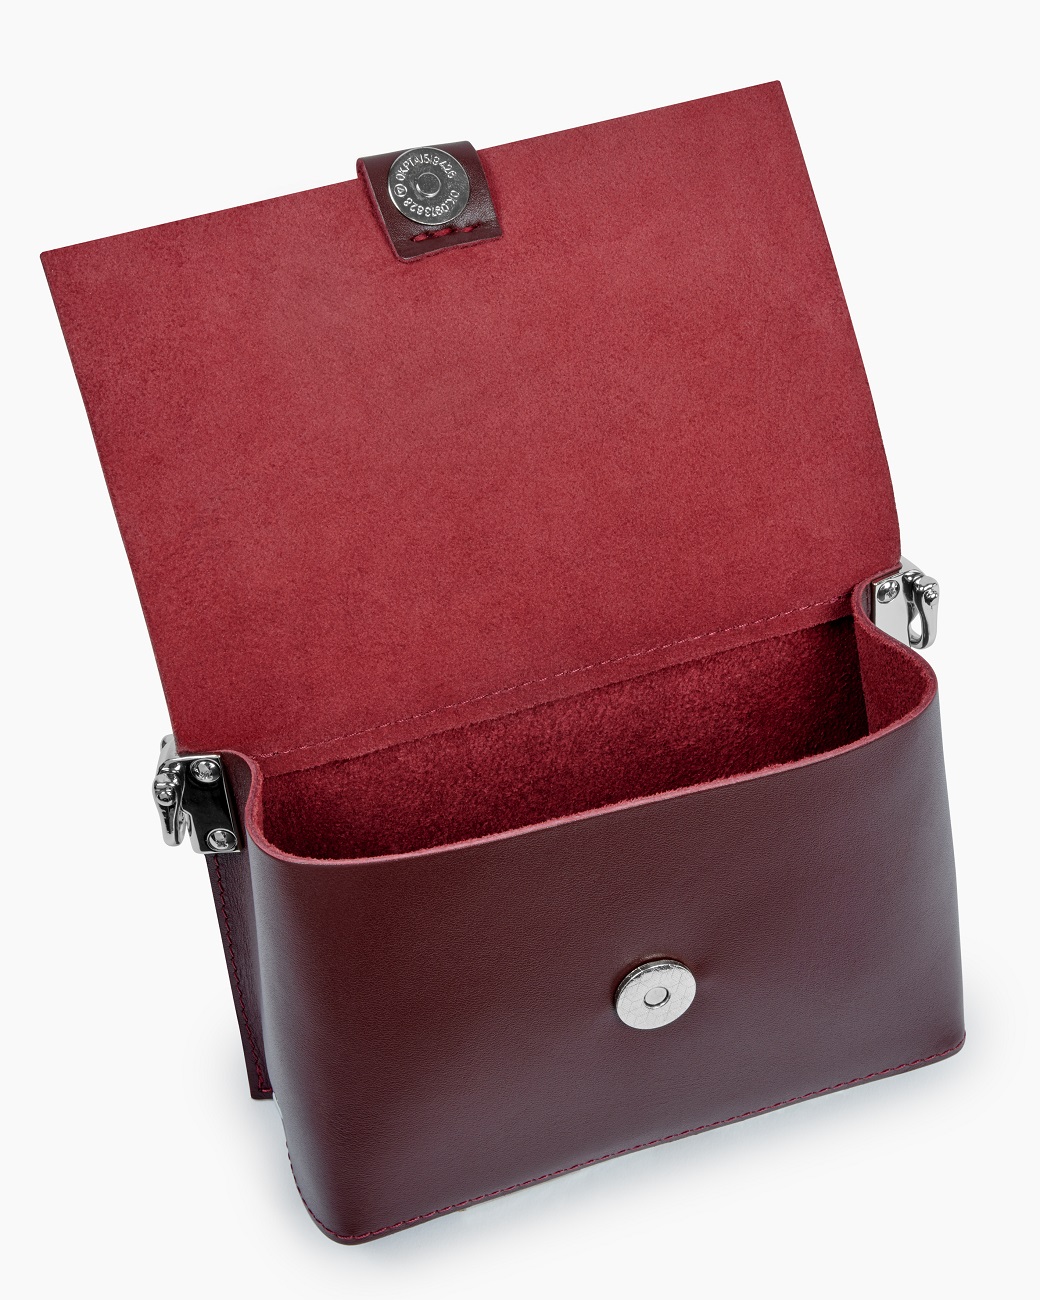 Женская поясная сумка из натуральной кожи бордовая A004 burgundy